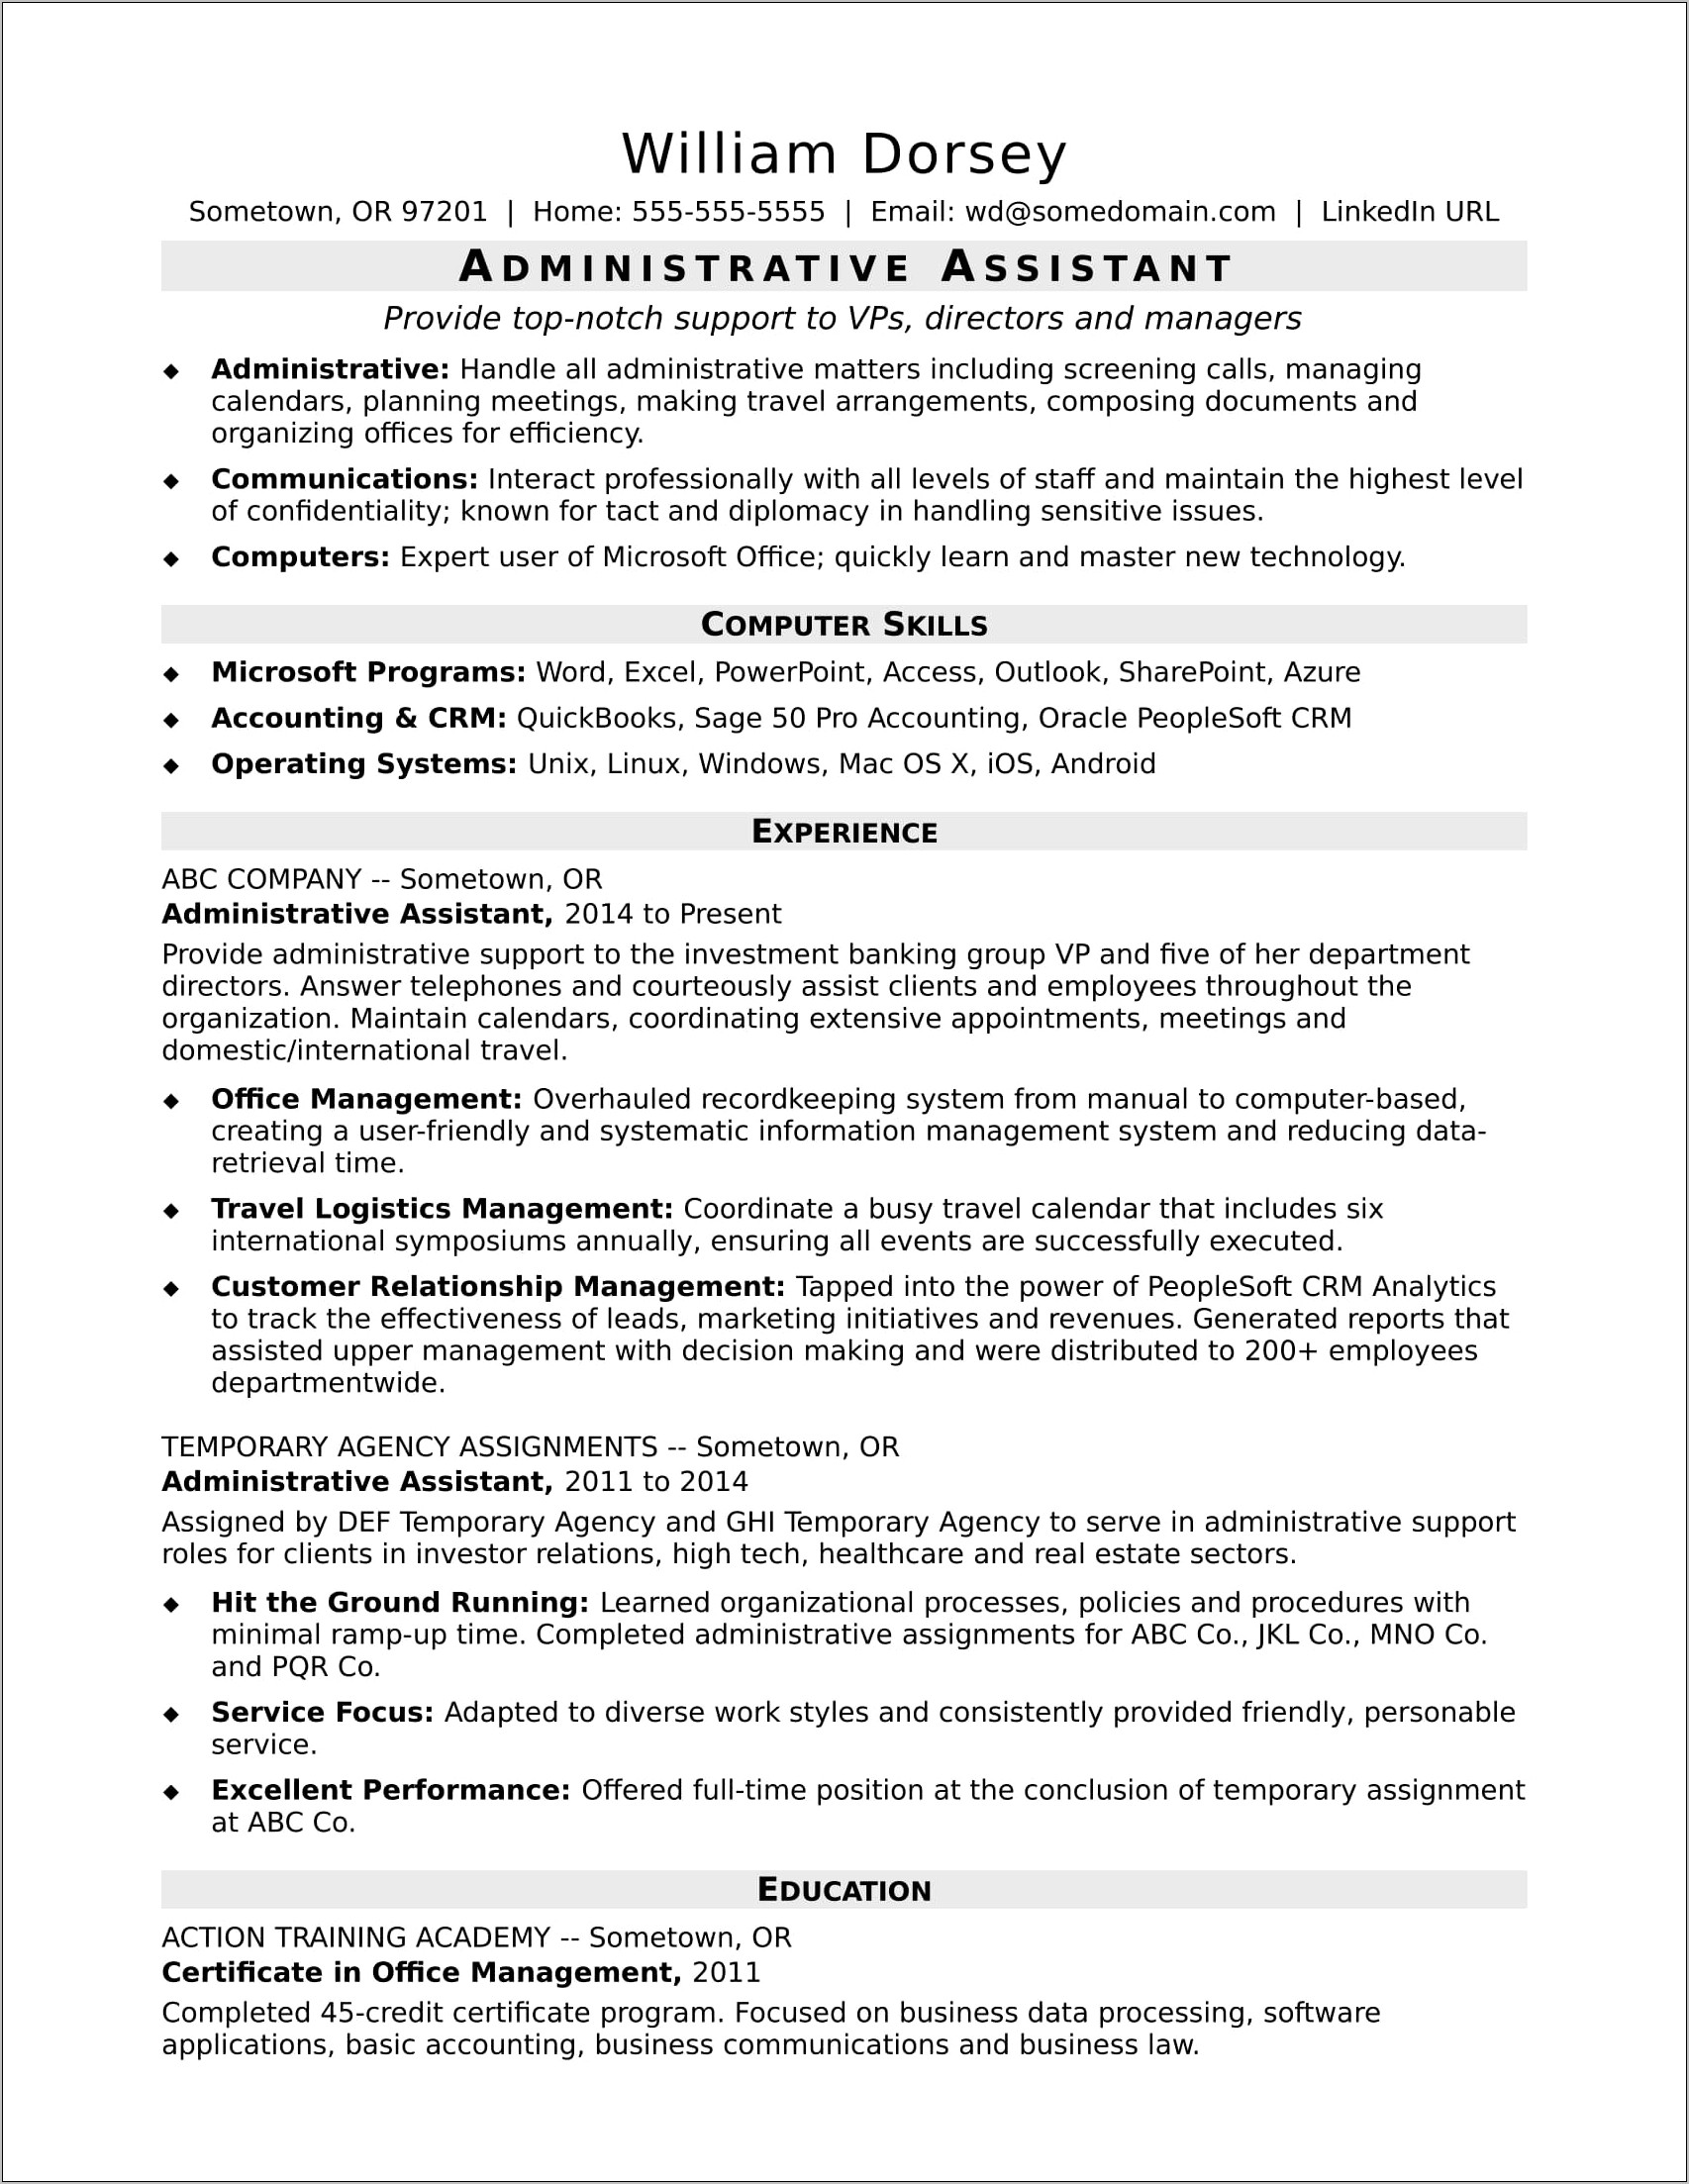 Resume Used Advanced Excel Skills